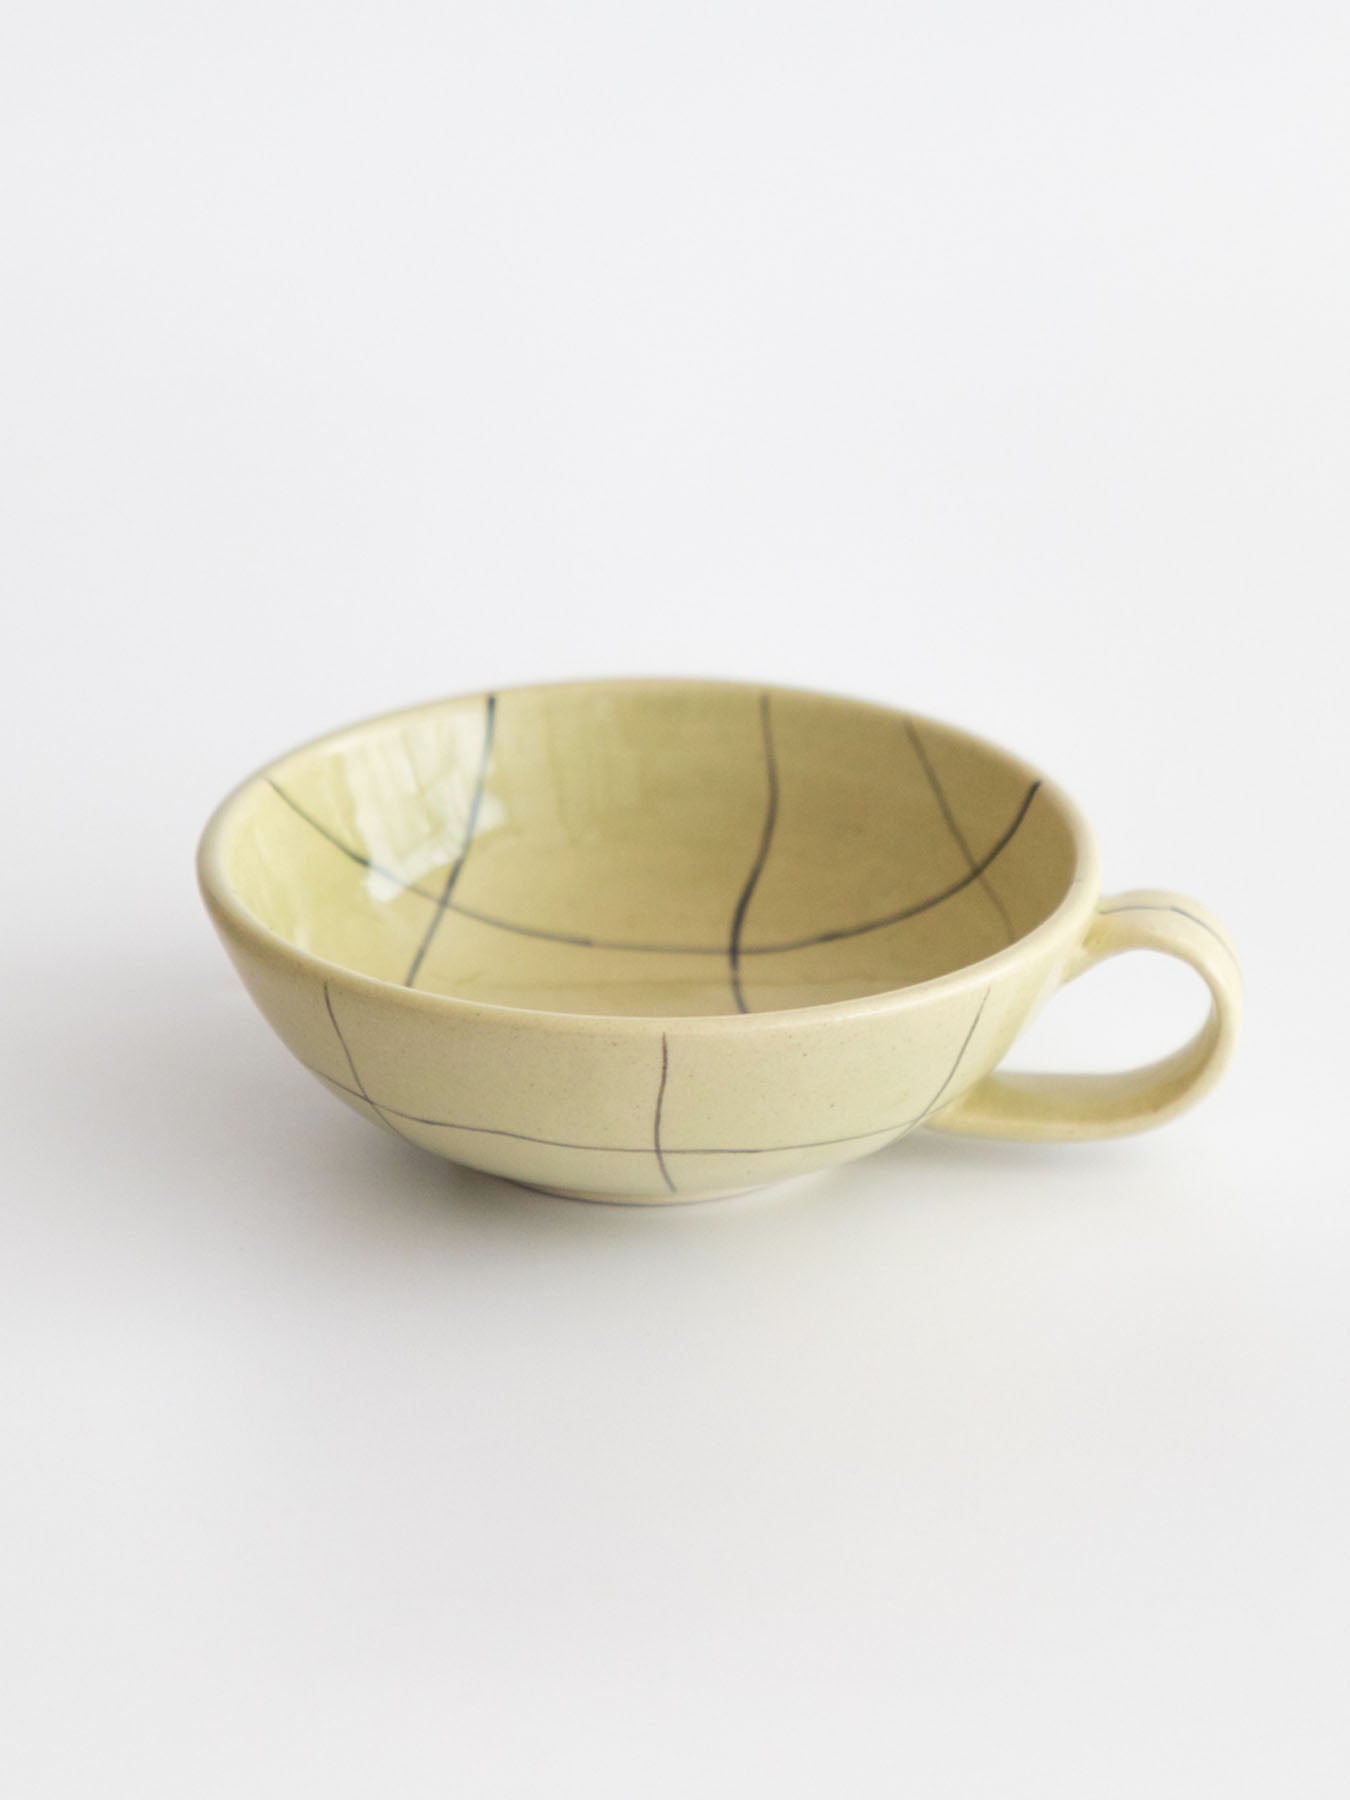 Chauko Teacups, Olive (Set of 2)